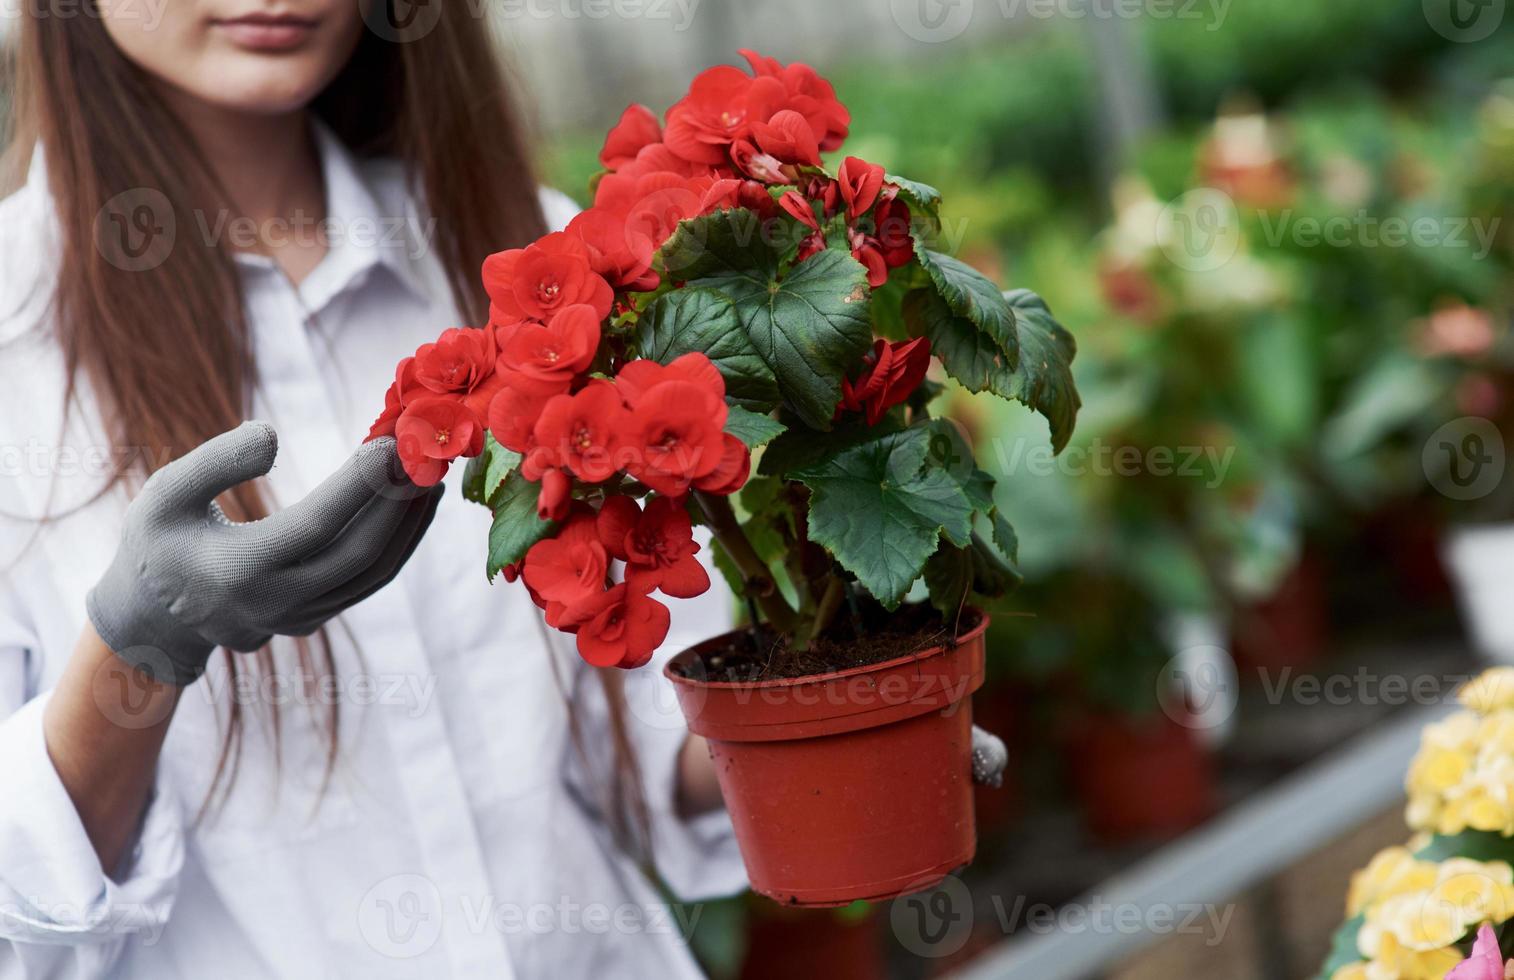 visar växten. flicka med handskar på händerna håller kruka med röda blommor foto